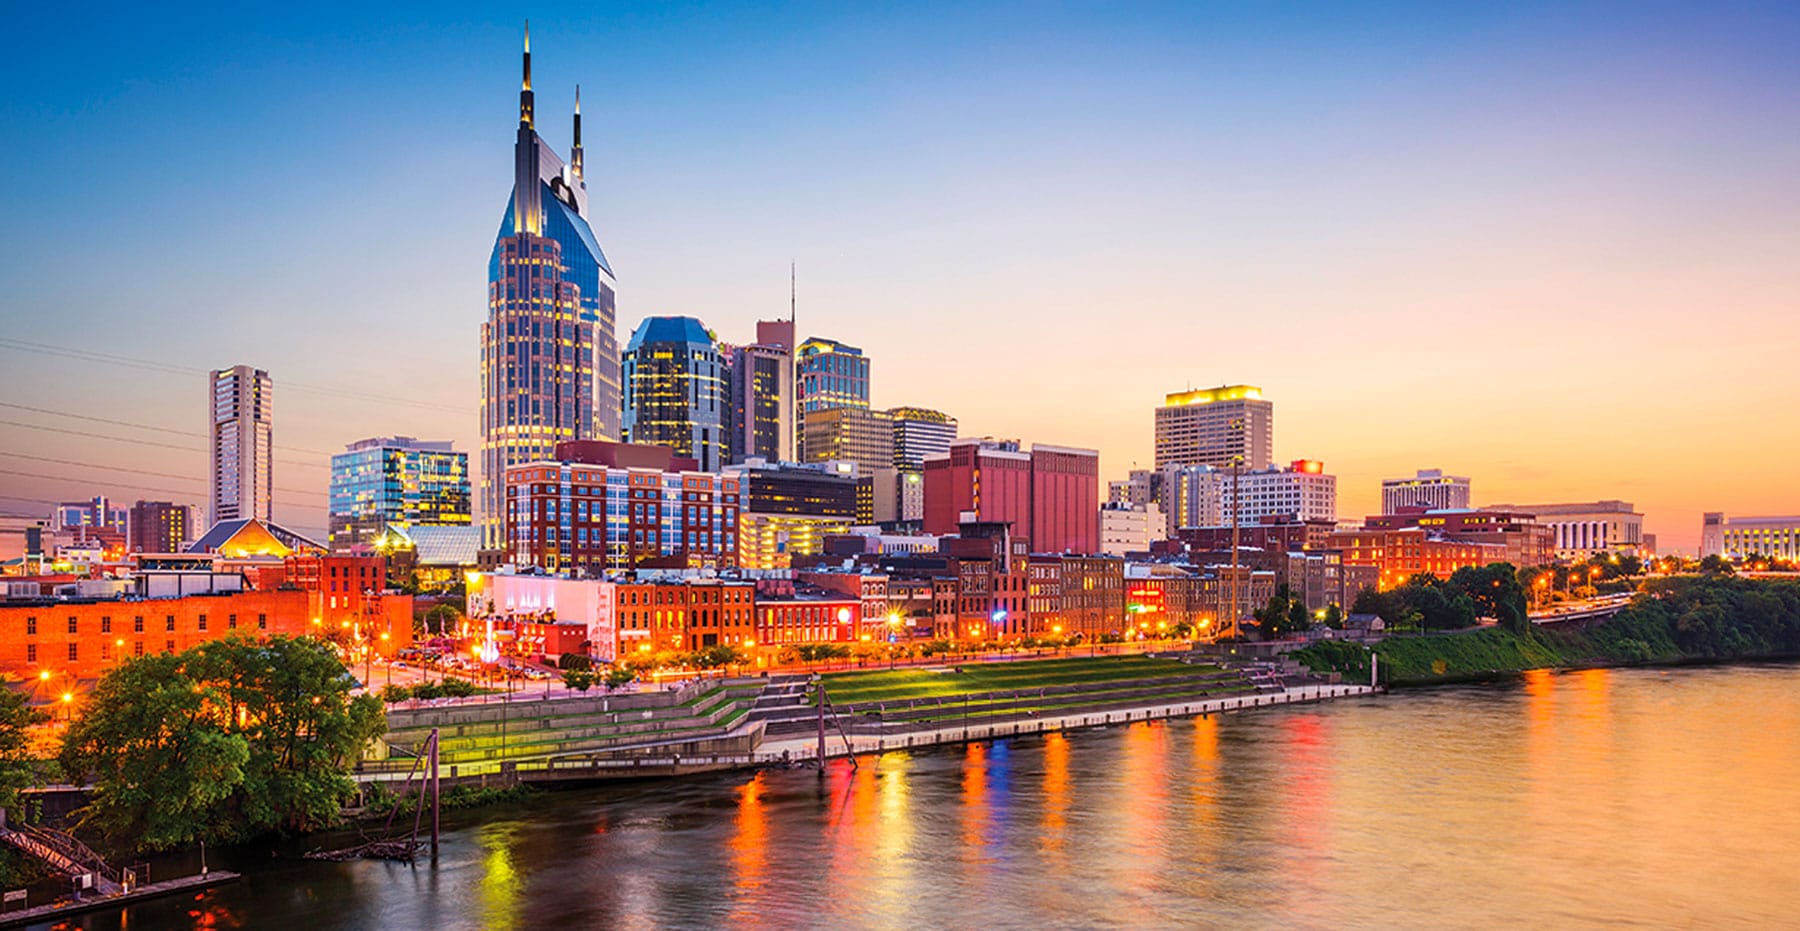 Nashville, TN skyline at sunset.